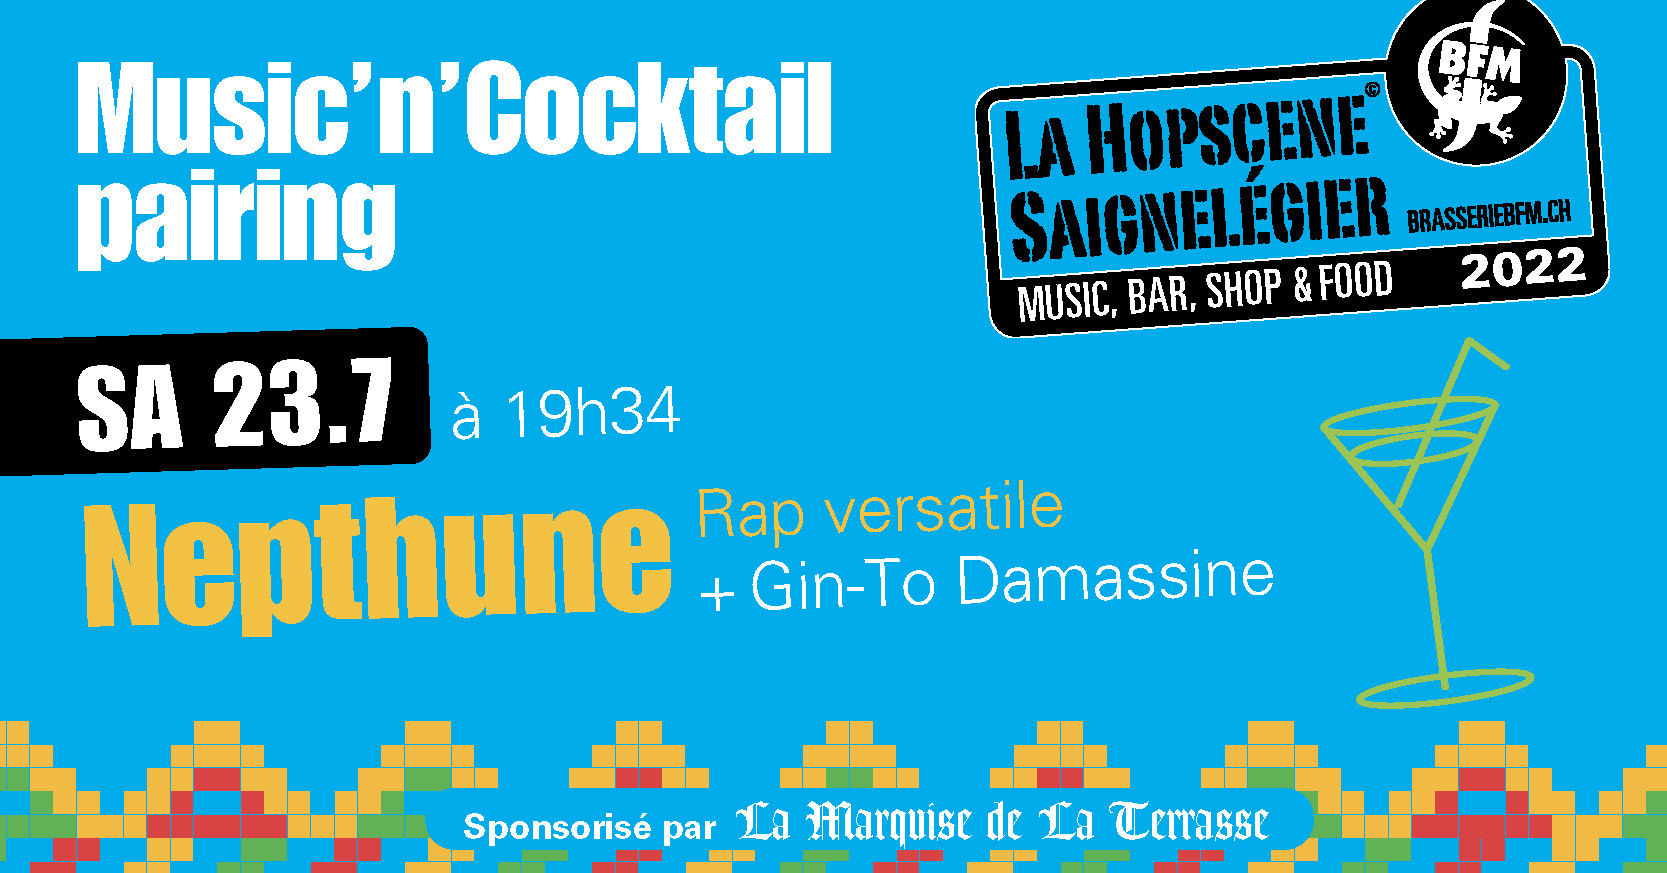 Nepthune + Gin-To Damassine